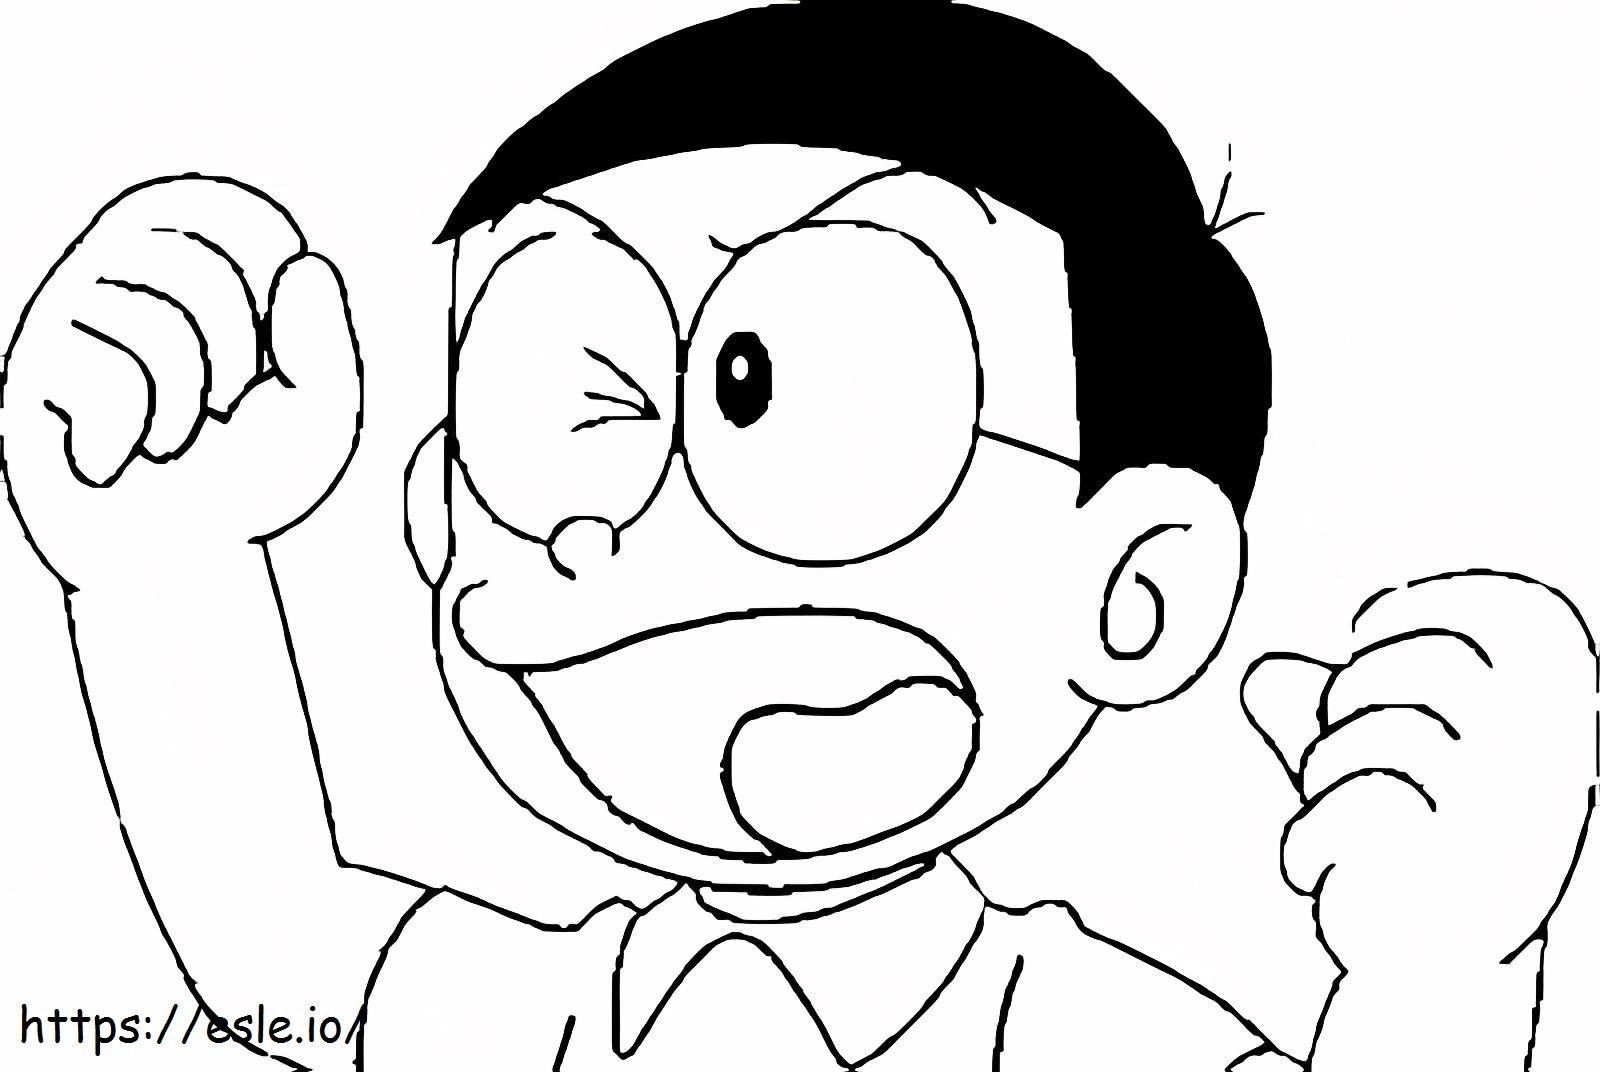 Nobita supărată de colorat